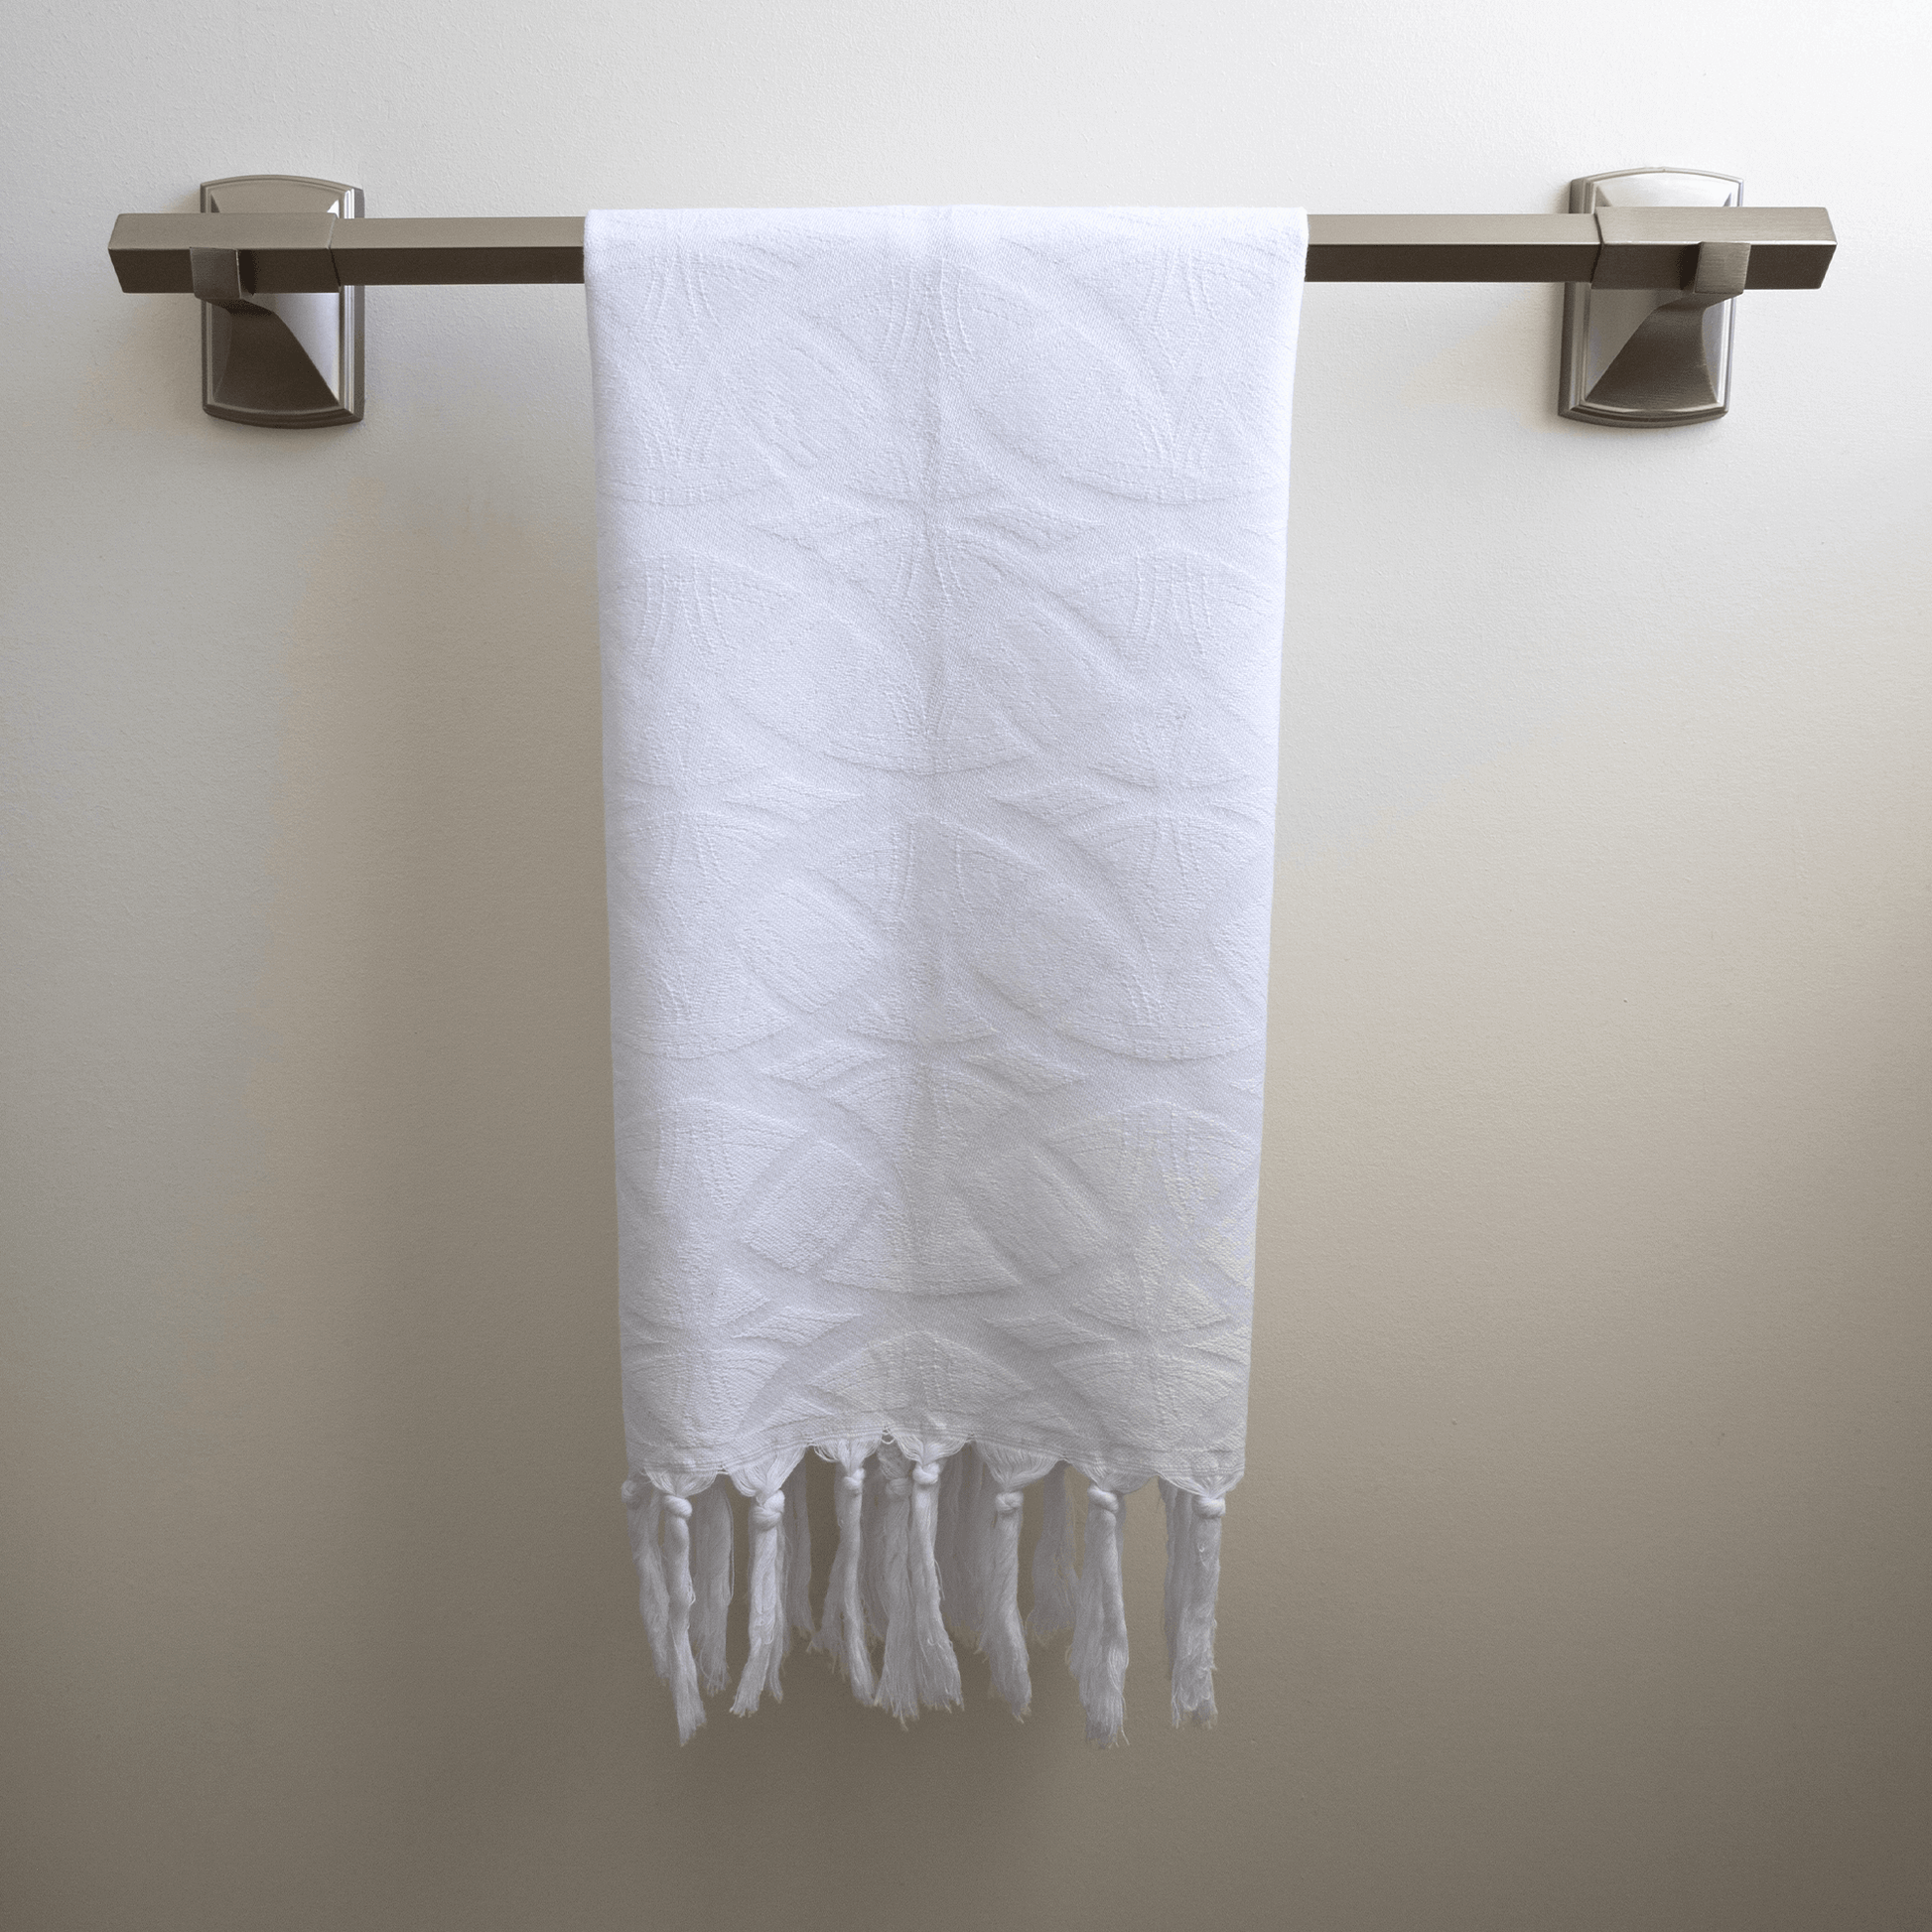 White Turkish hand towel